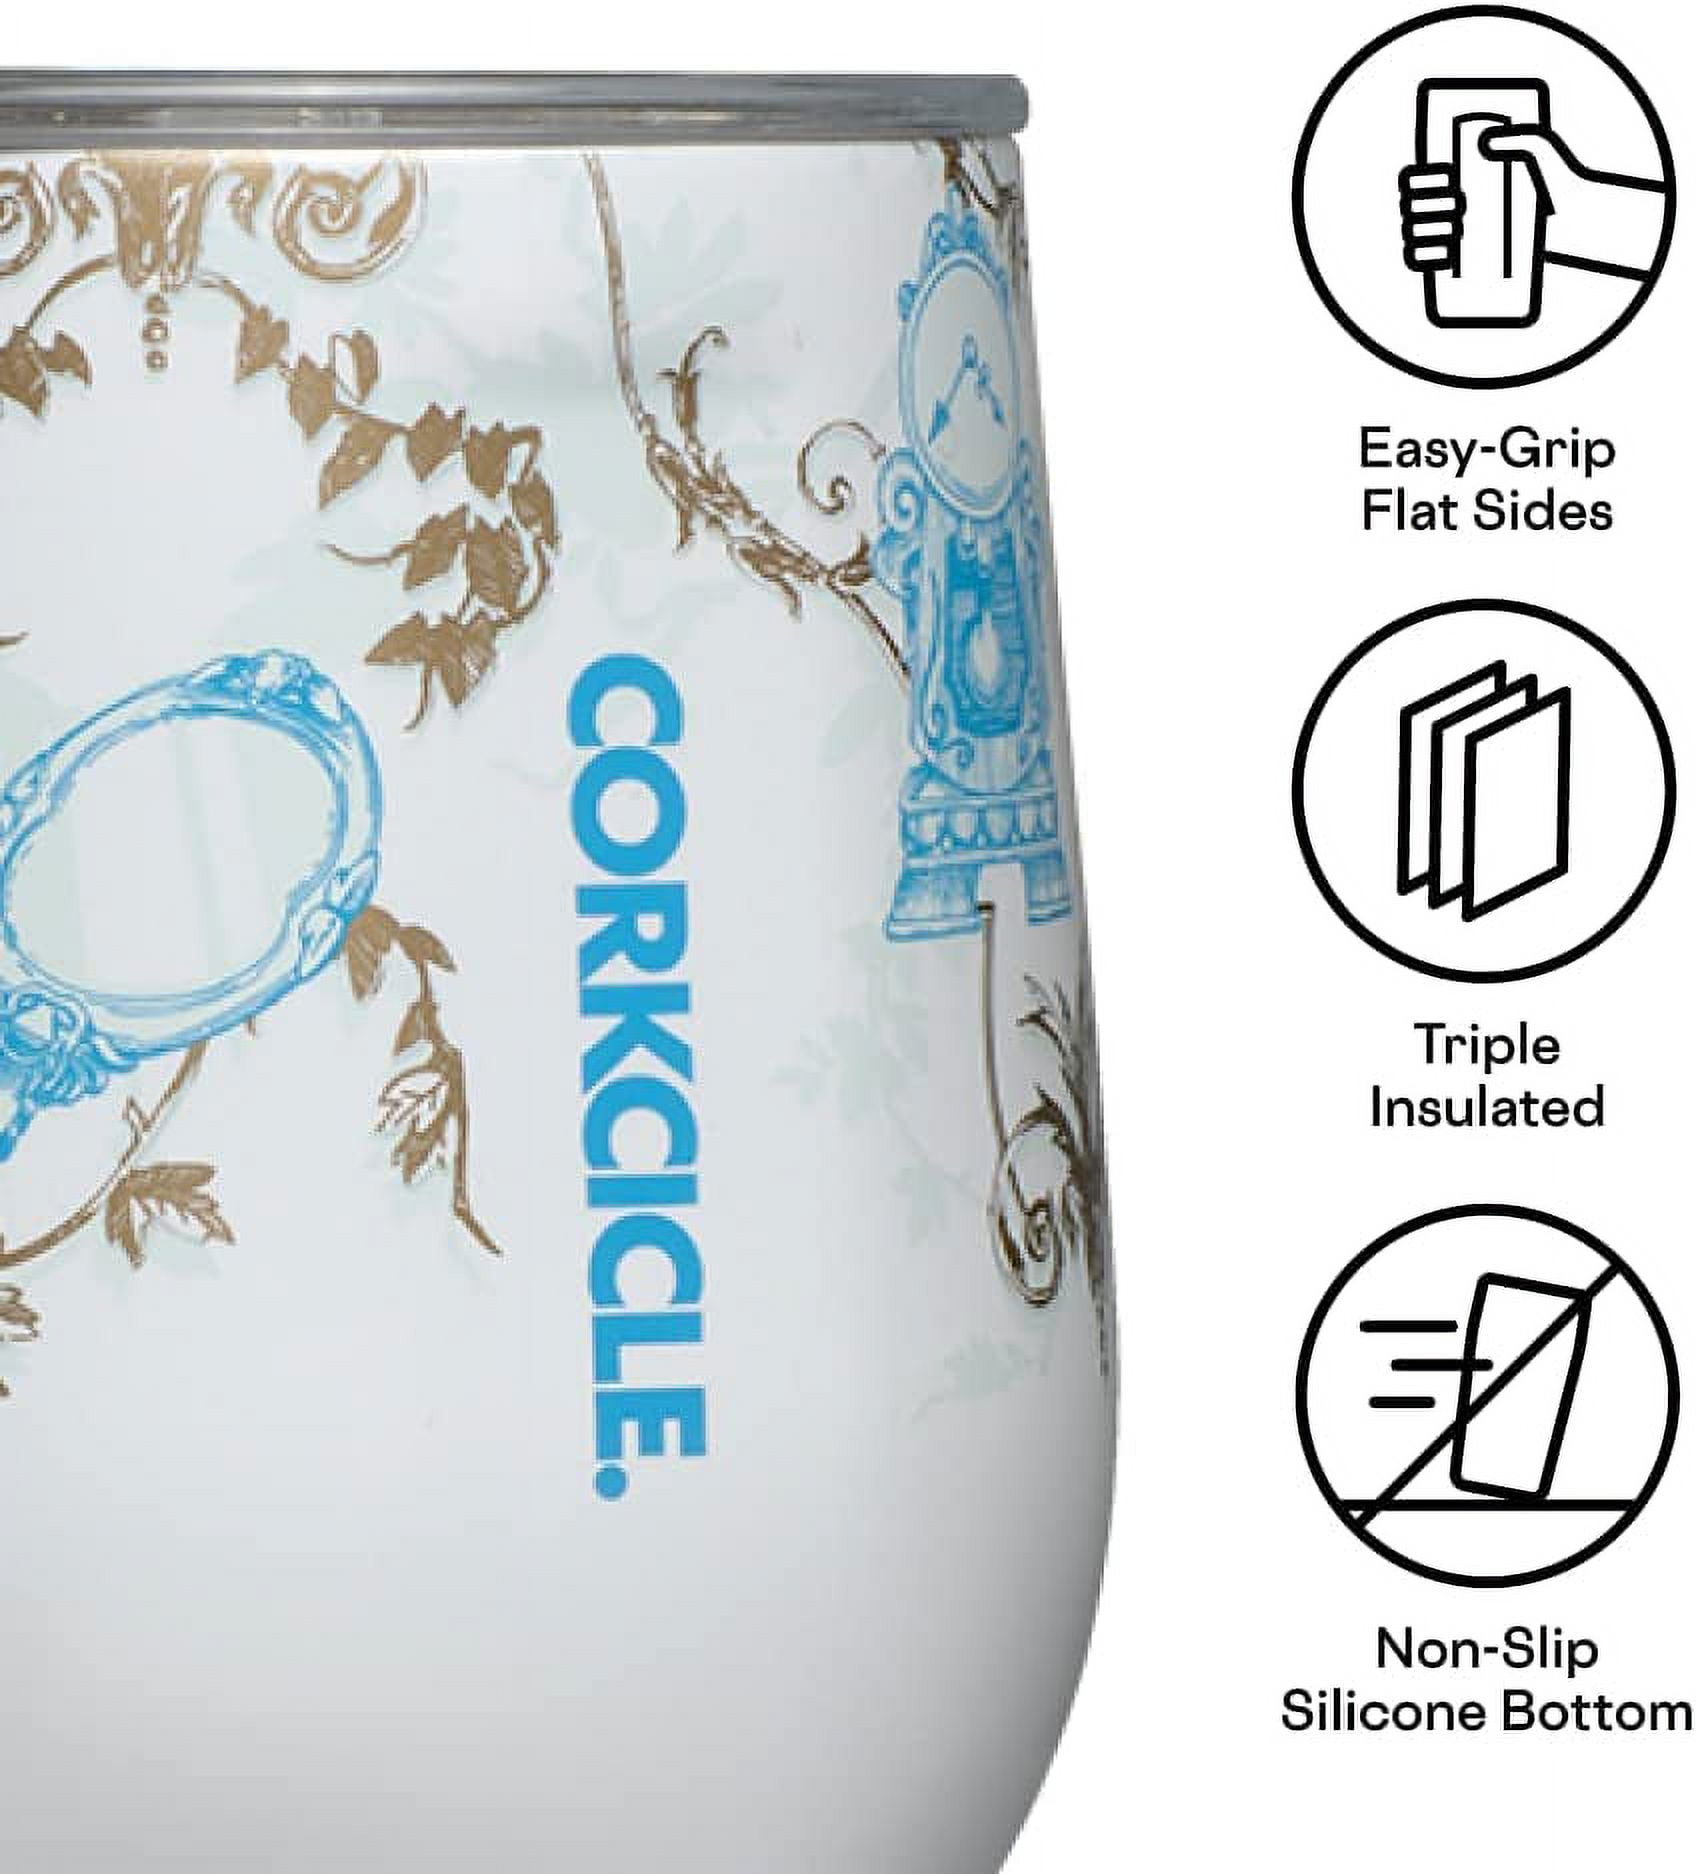 16 oz. Disney Cinderella Corkcicle Coffee Mug – Bellis Boutique